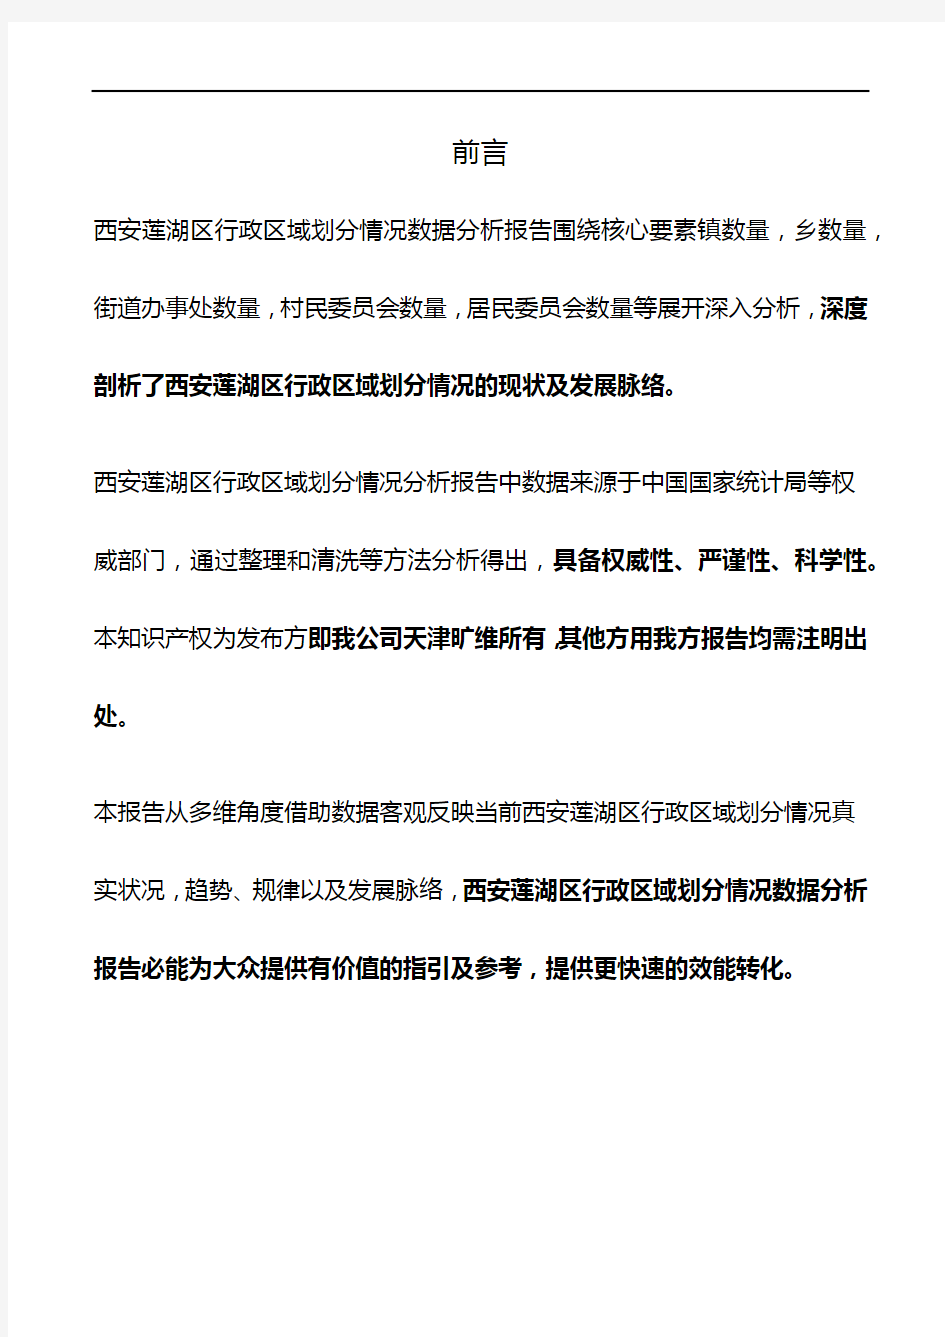 陕西省西安莲湖区行政区域划分情况3年数据分析报告2020版